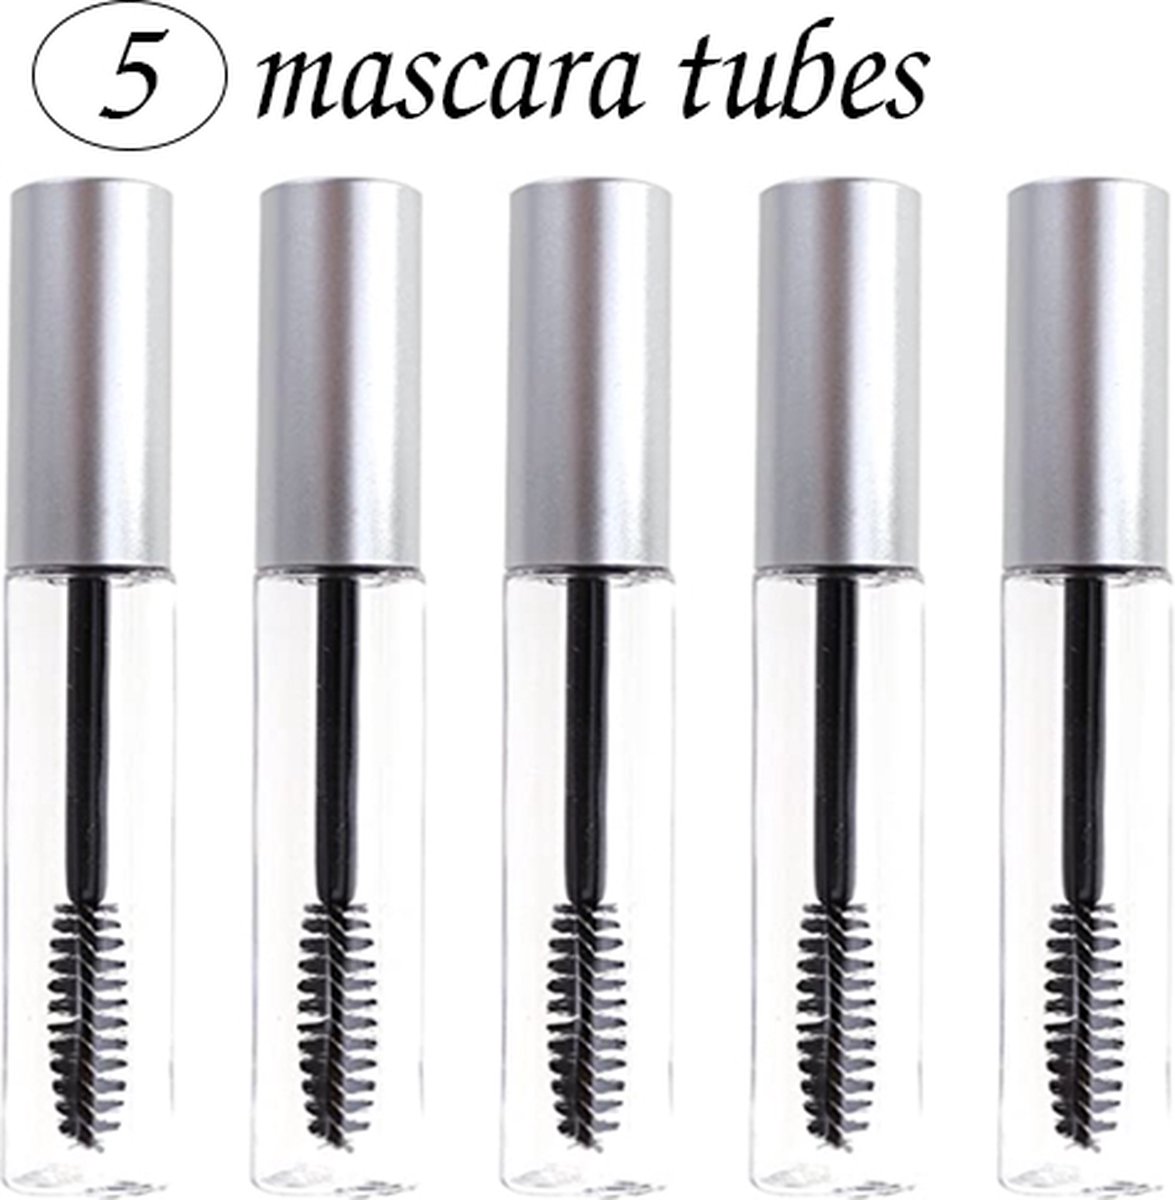 mascara tube leeg - Zilver- 5 tubes - mascara leeg - mascara flesje - lege tube -mascara borsteltjes wegwerp